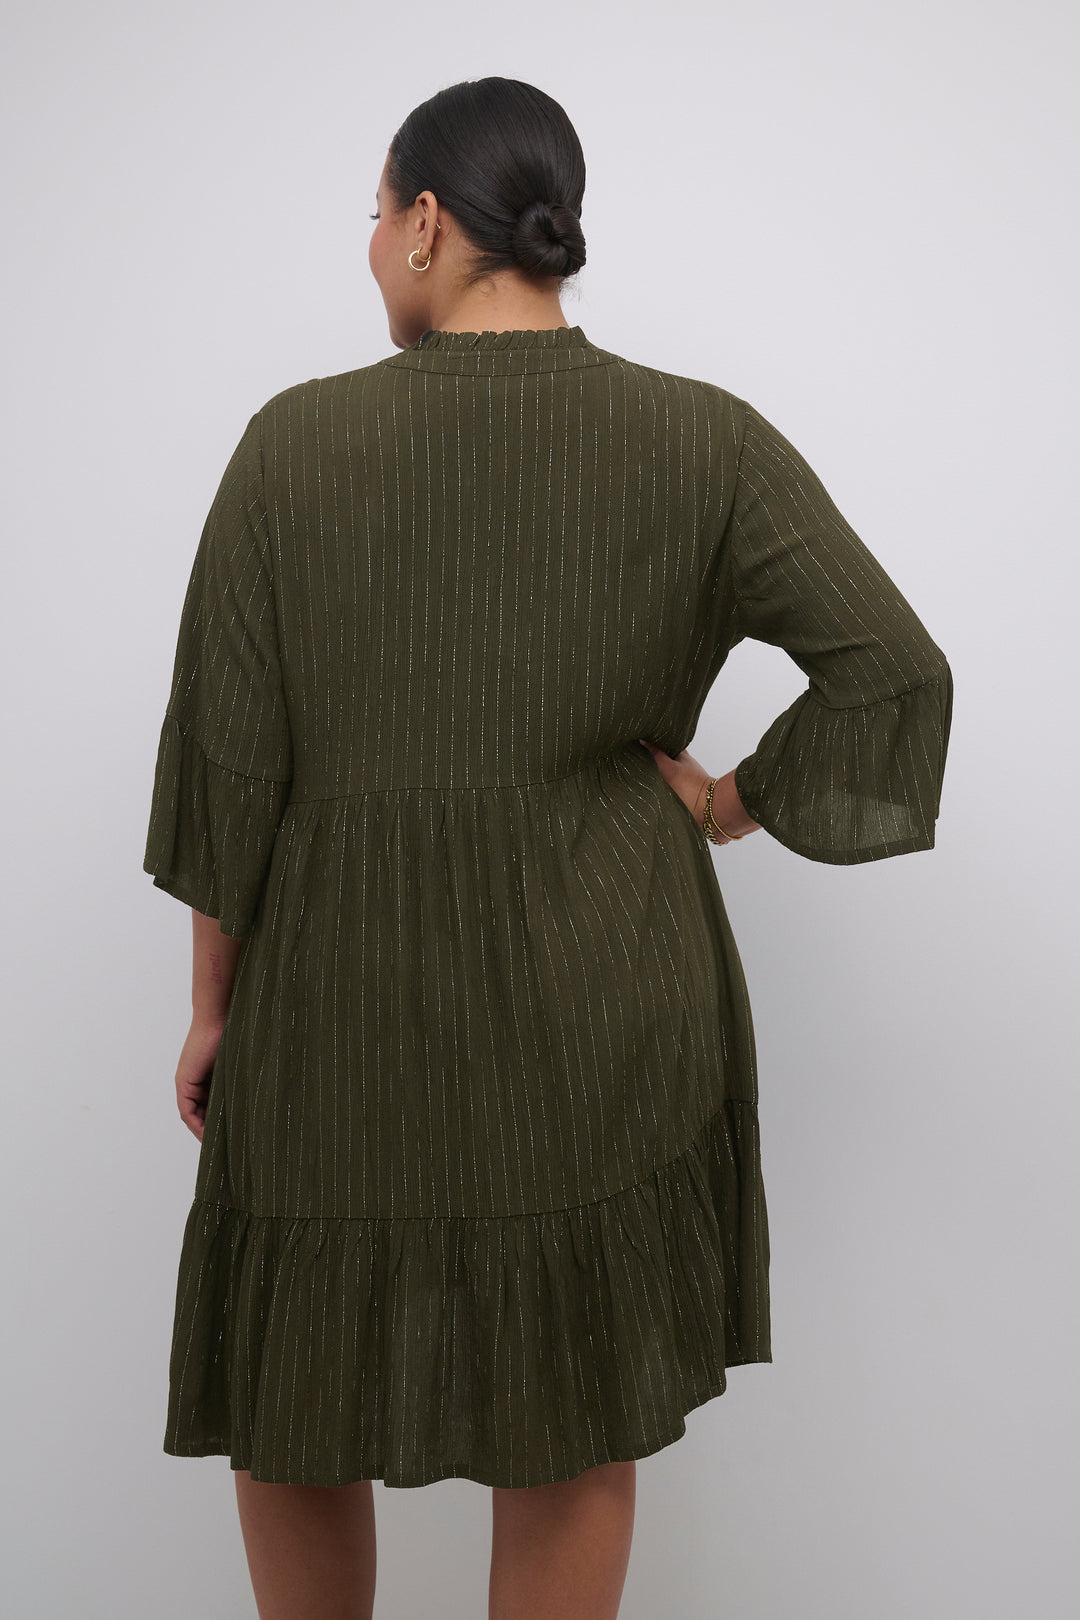 groene jurk - kaffe curve - - grote maten - dameskleding - kledingwinkel - herent - leuven